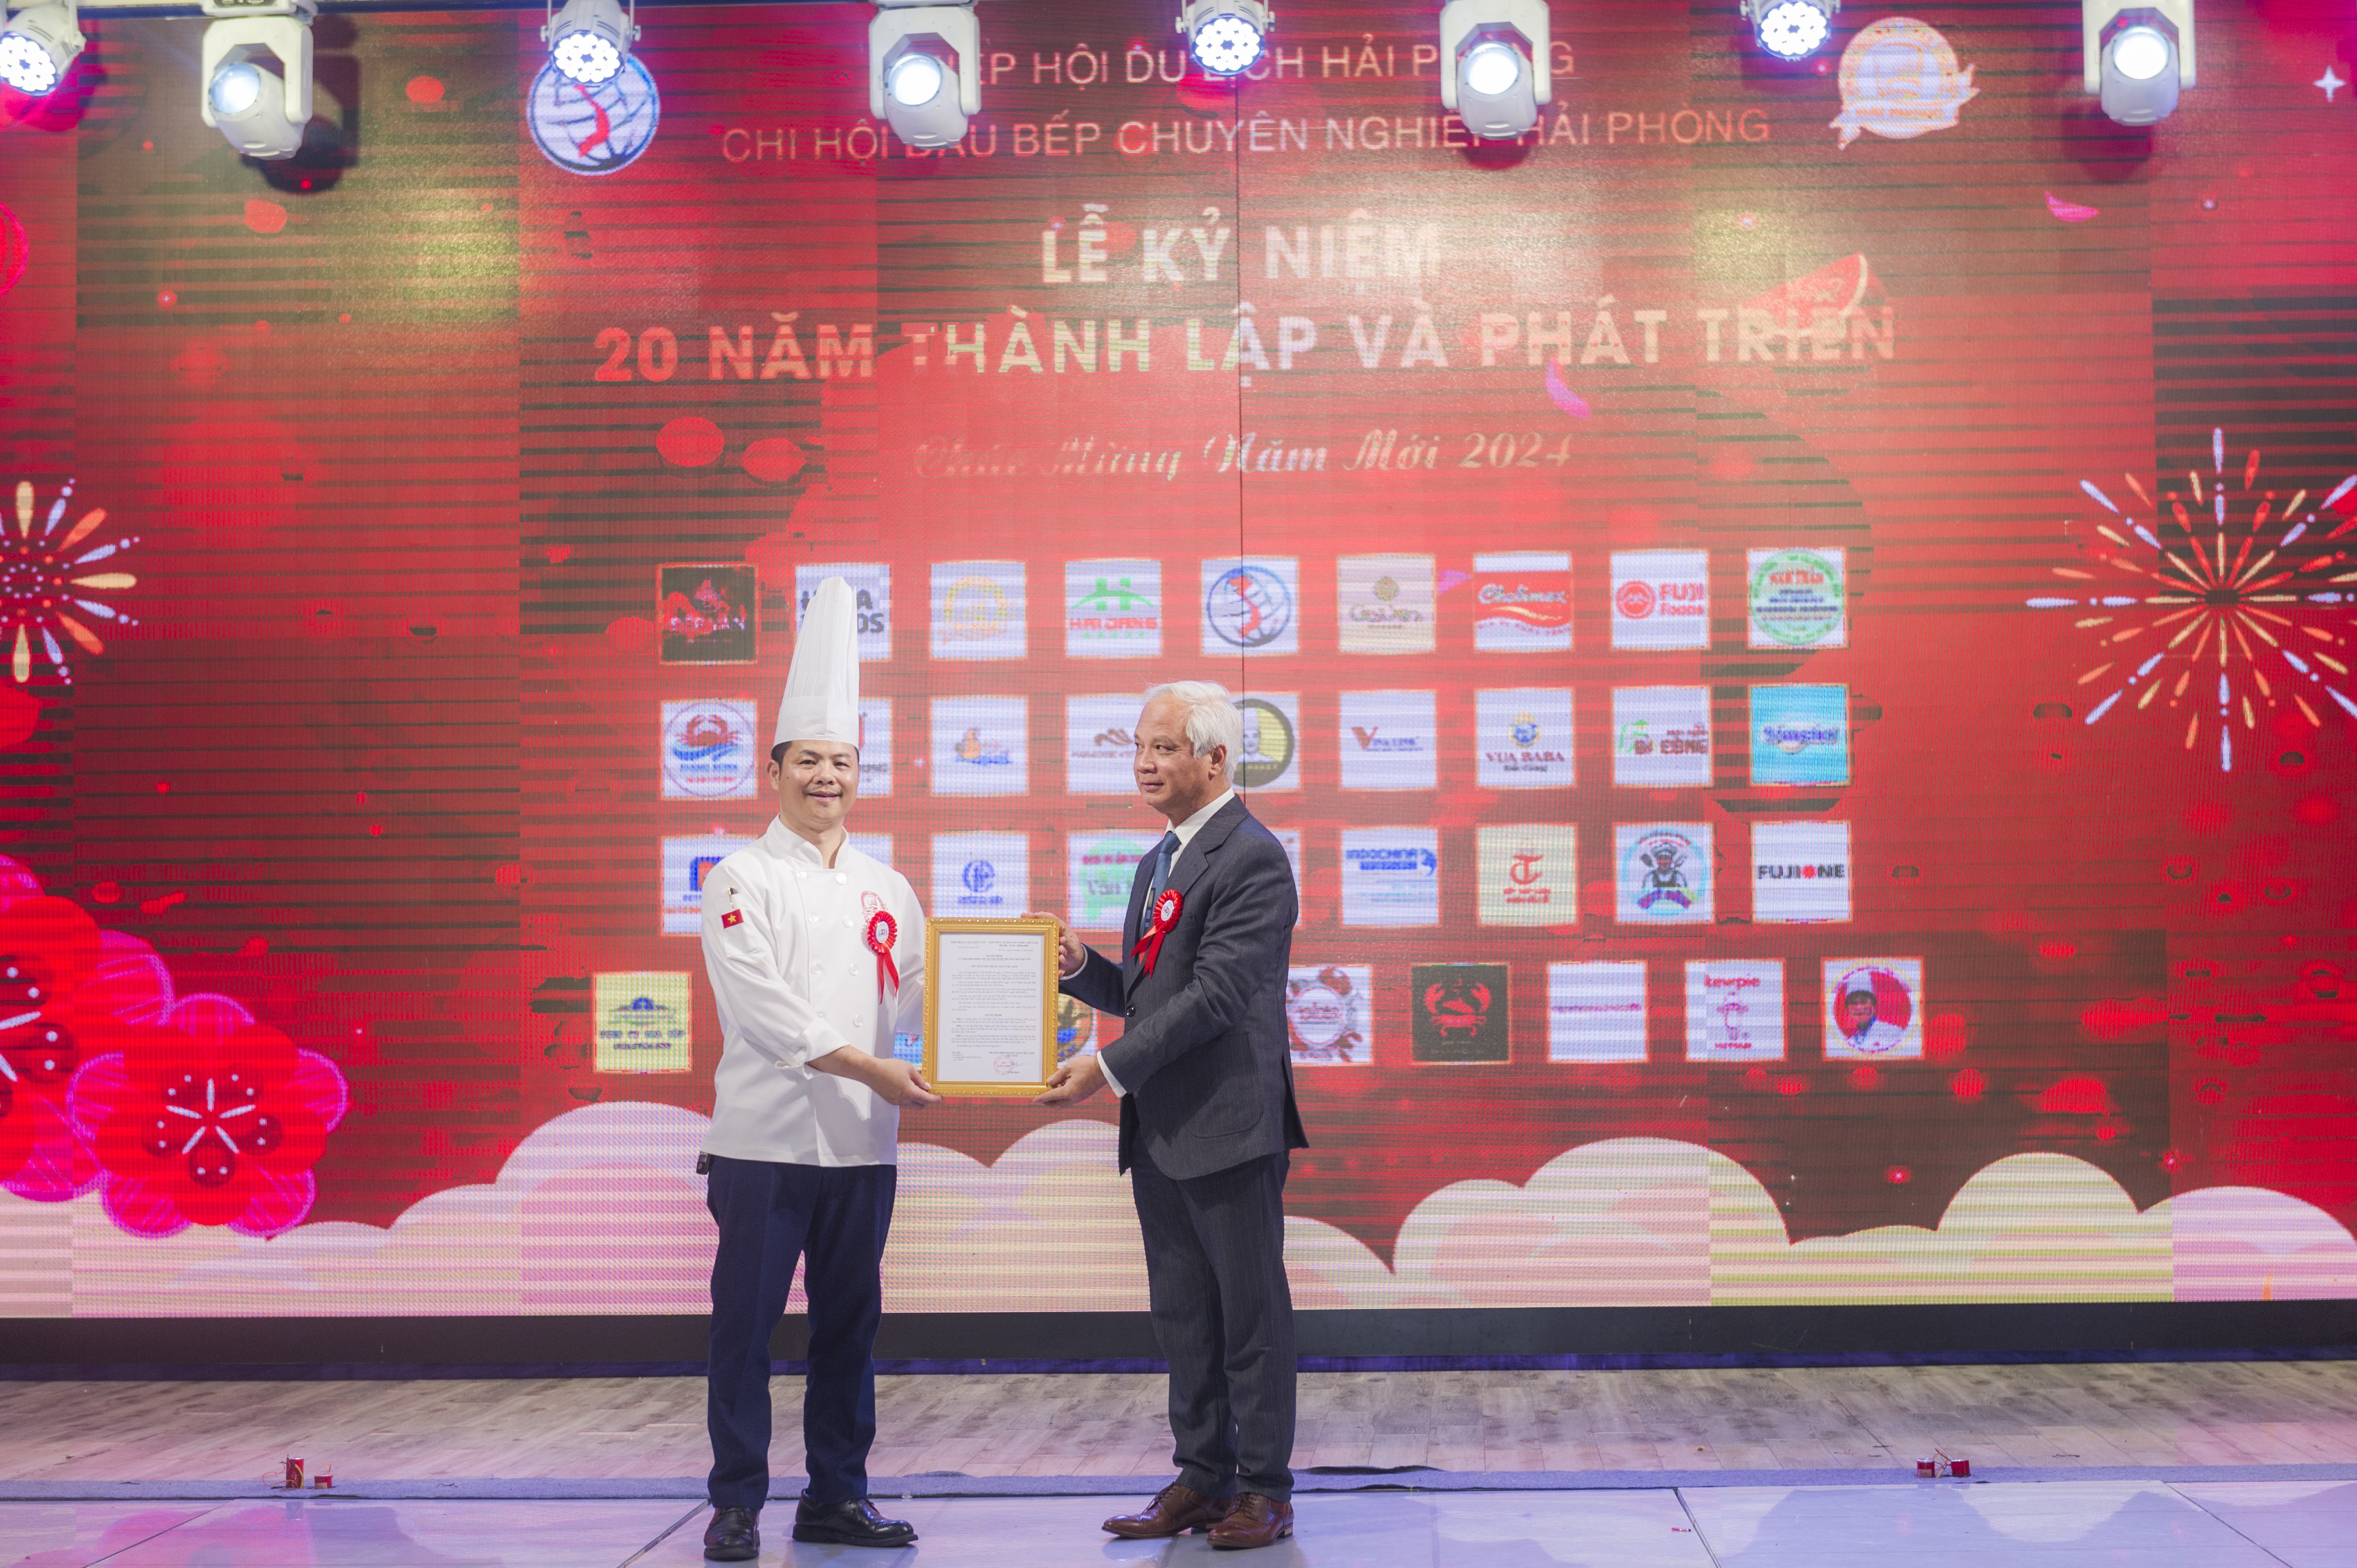 Ông Nguyễn Thế Toàn, Trưởng ban Đào tạo, Hiệp hội Du lịch Việt Nam trao chứng nhận của VCF cho ông Đỗ Ngọc Công - Chủ tịch Hội Đầu bếp chuyên nghiệp Hải Phòng